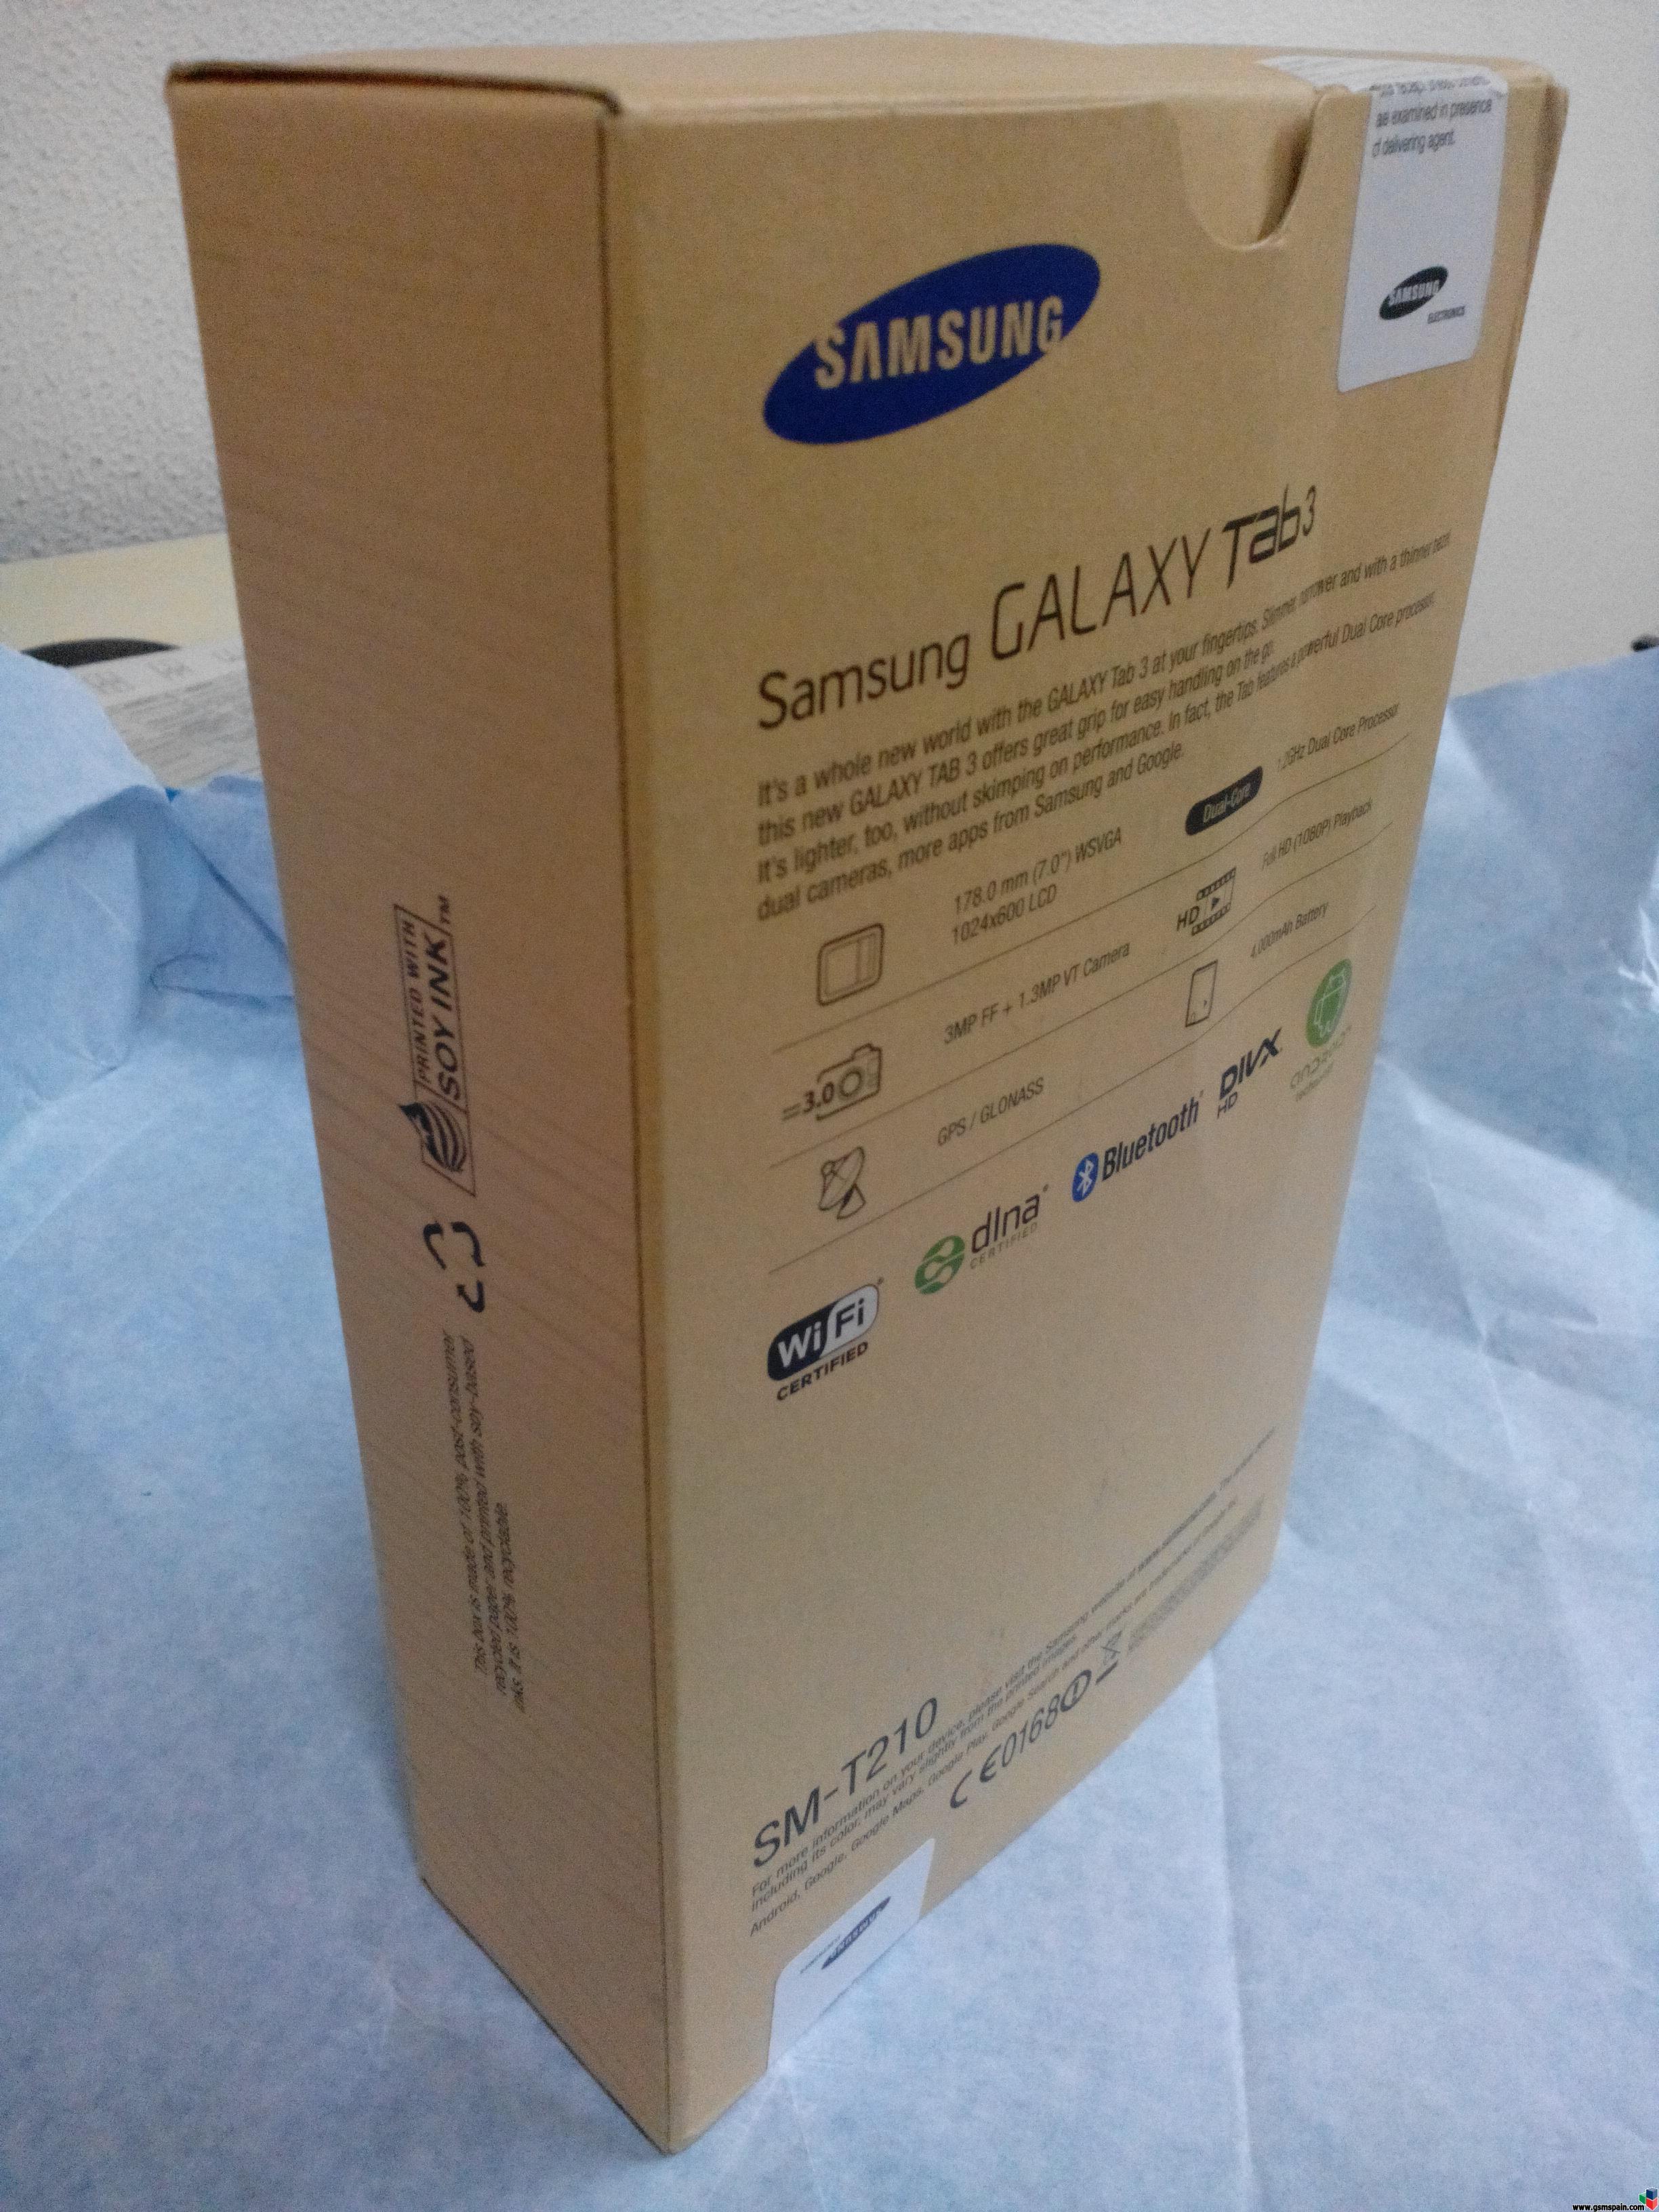 [VENDO] Samsung Galaxy Tab 3 de 7" A ESTRENAR.